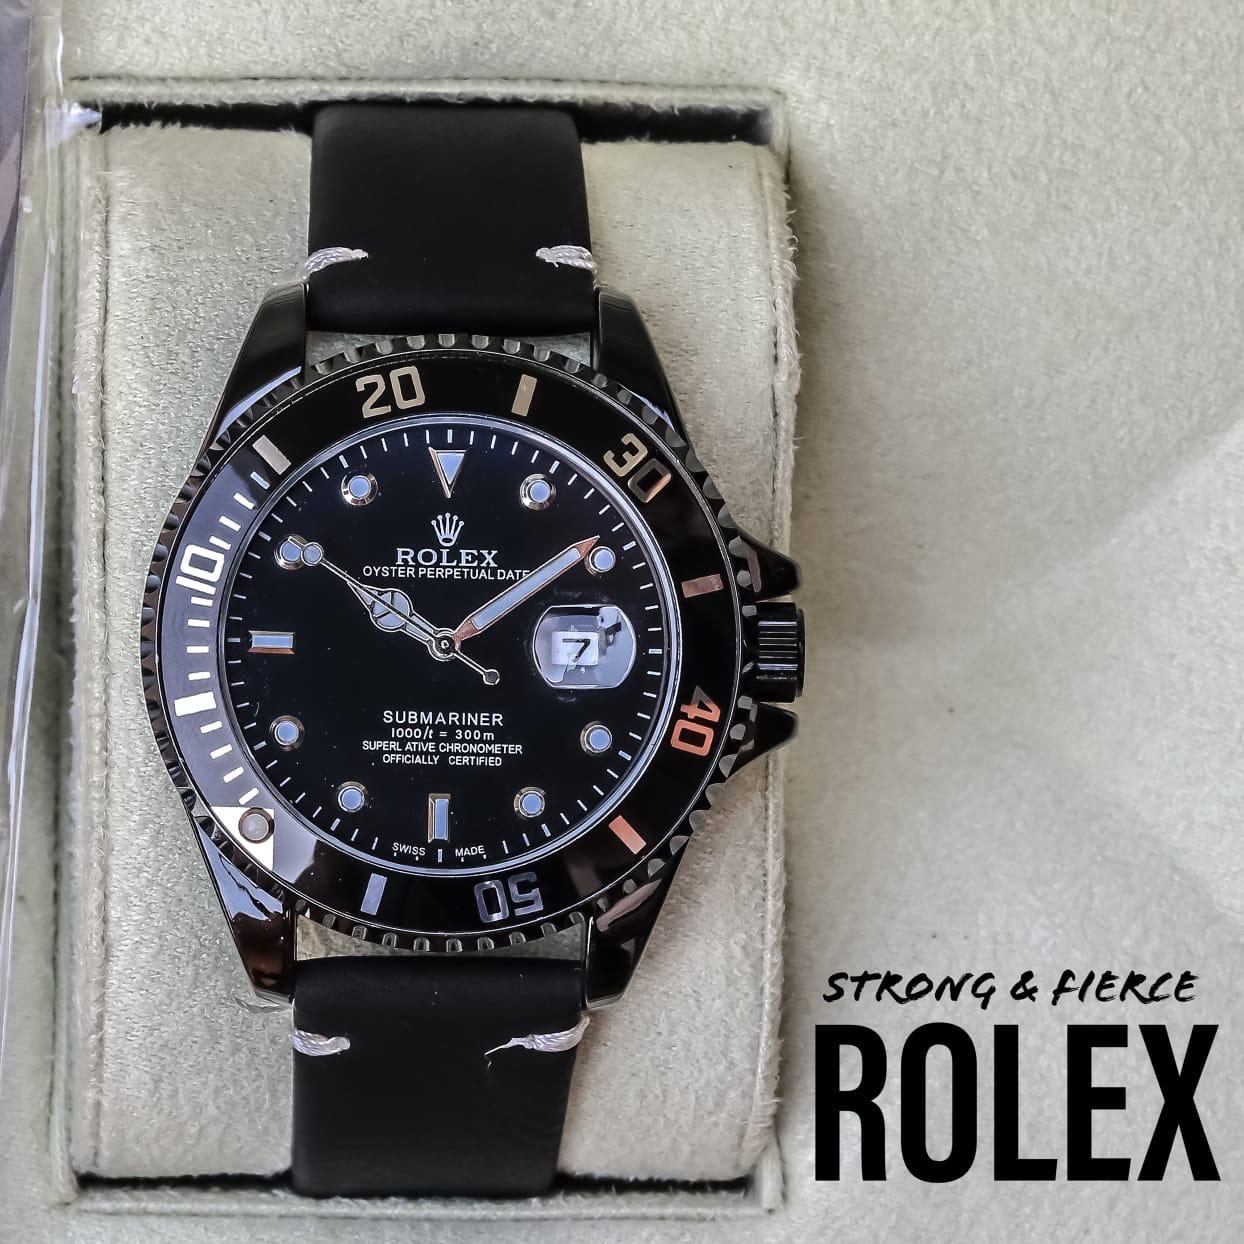 Strong & Fierce Rolex Watch, Black